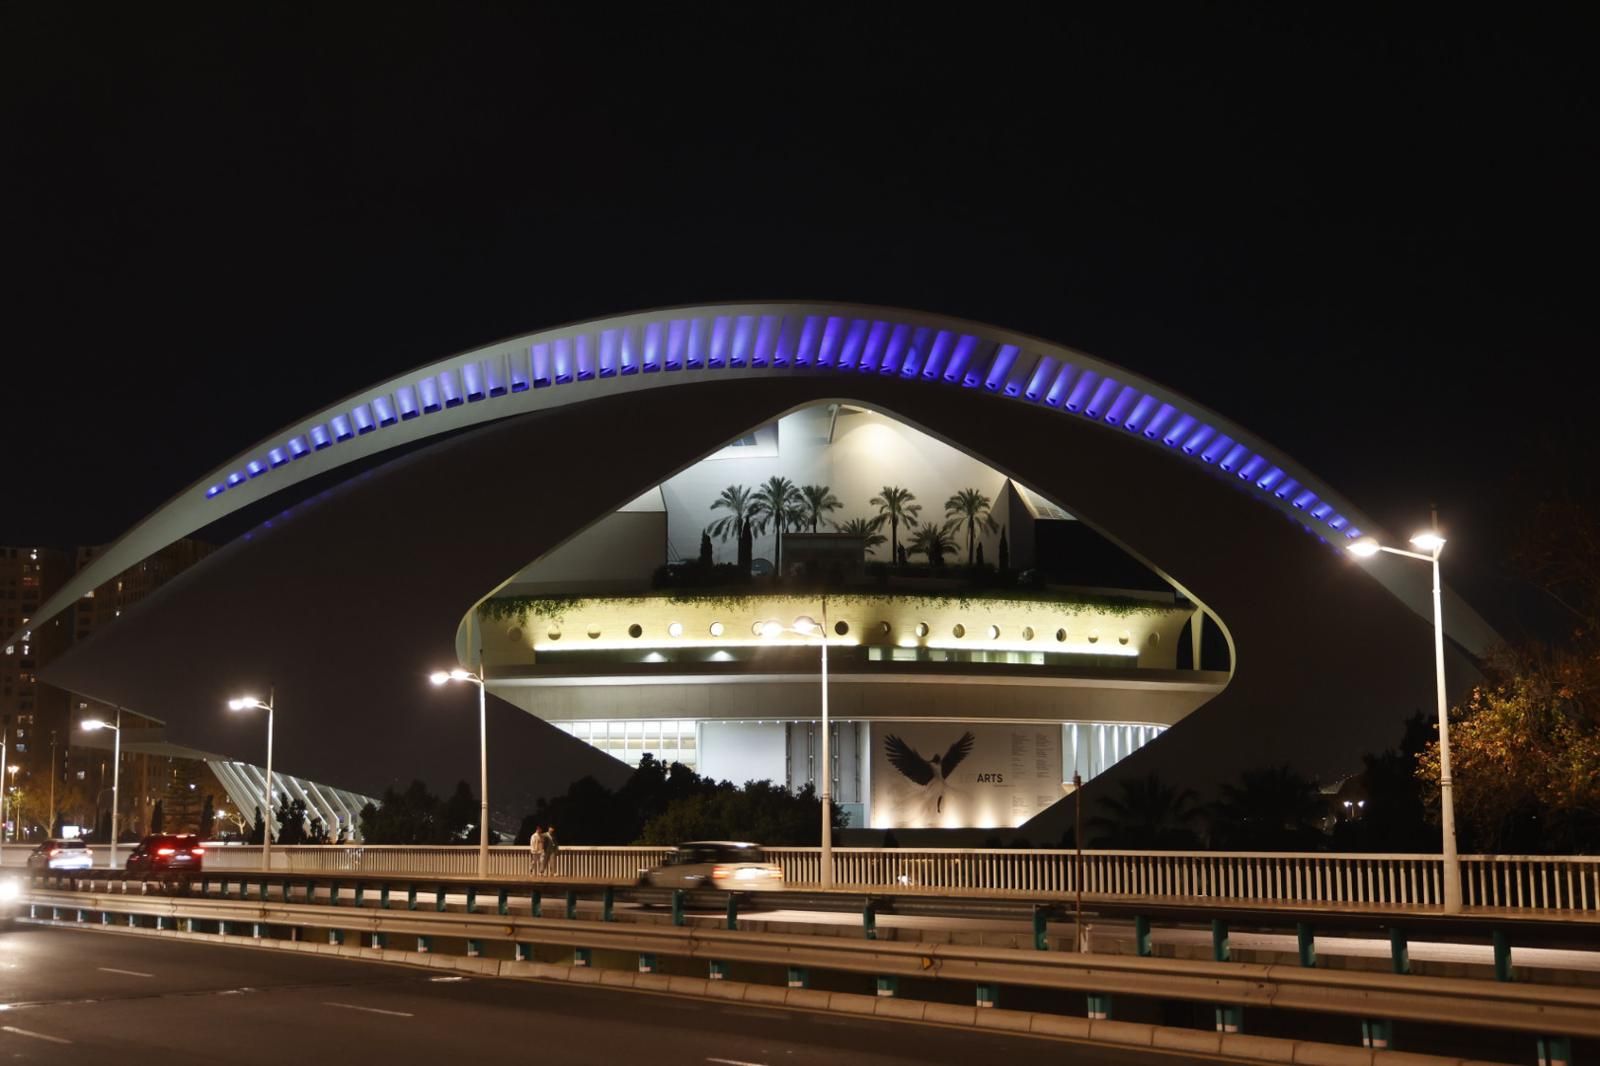 La Ciudad de las Artes se ilumina por el 200 aniversario de la Policía Nacional